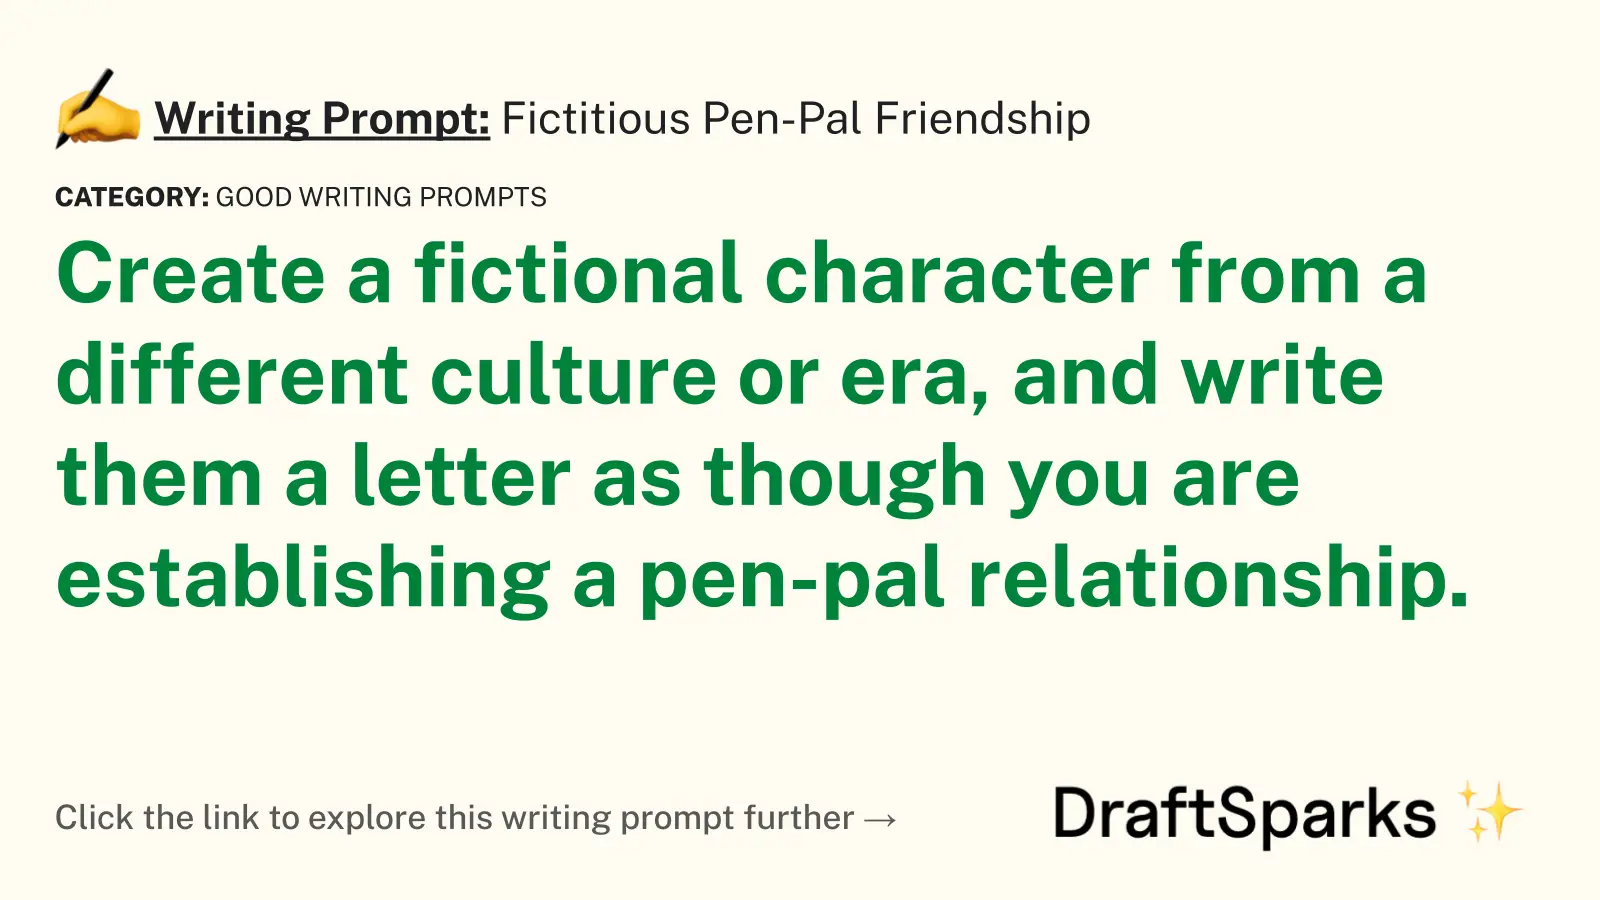 Fictitious Pen-Pal Friendship